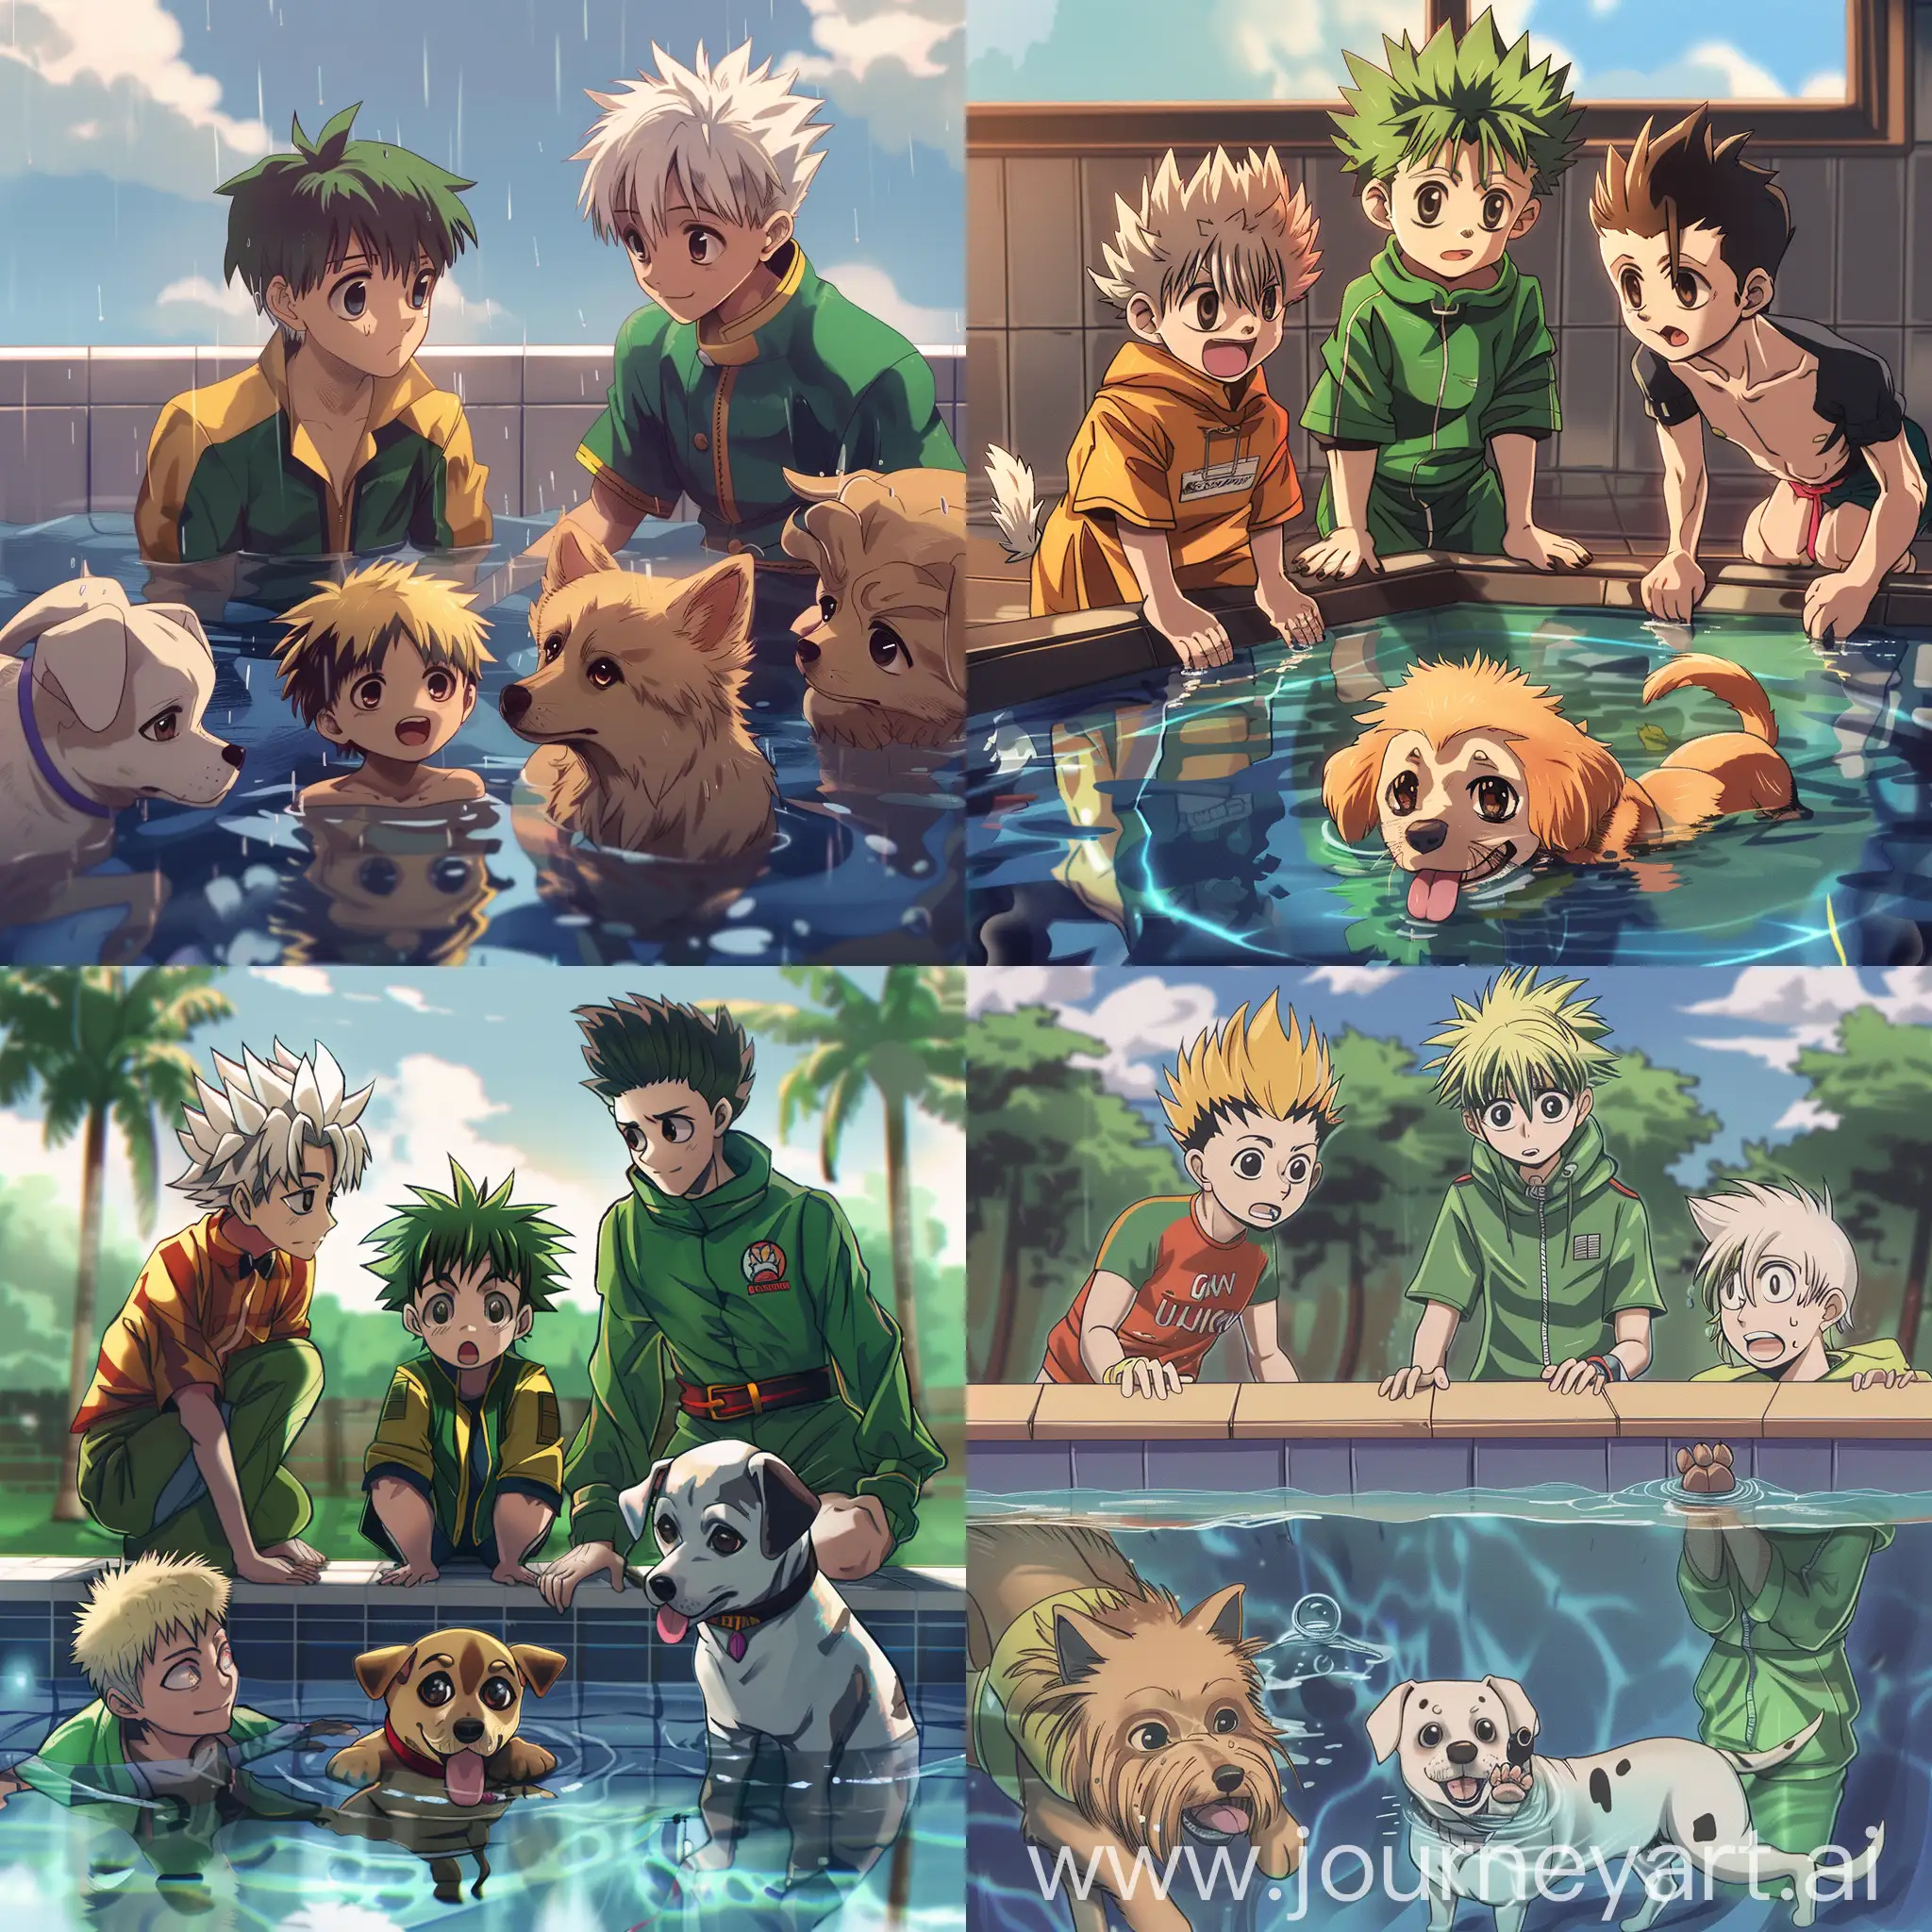 vẽ các nhân vật Gon, Killua, Kurapika, LeoRio và tác giả Togashi (hình chú chó) , dựa theo bức tranh meme "Mother Ignoring Kid Drowning In A Pool", phong cách manga Hunter x Hunter